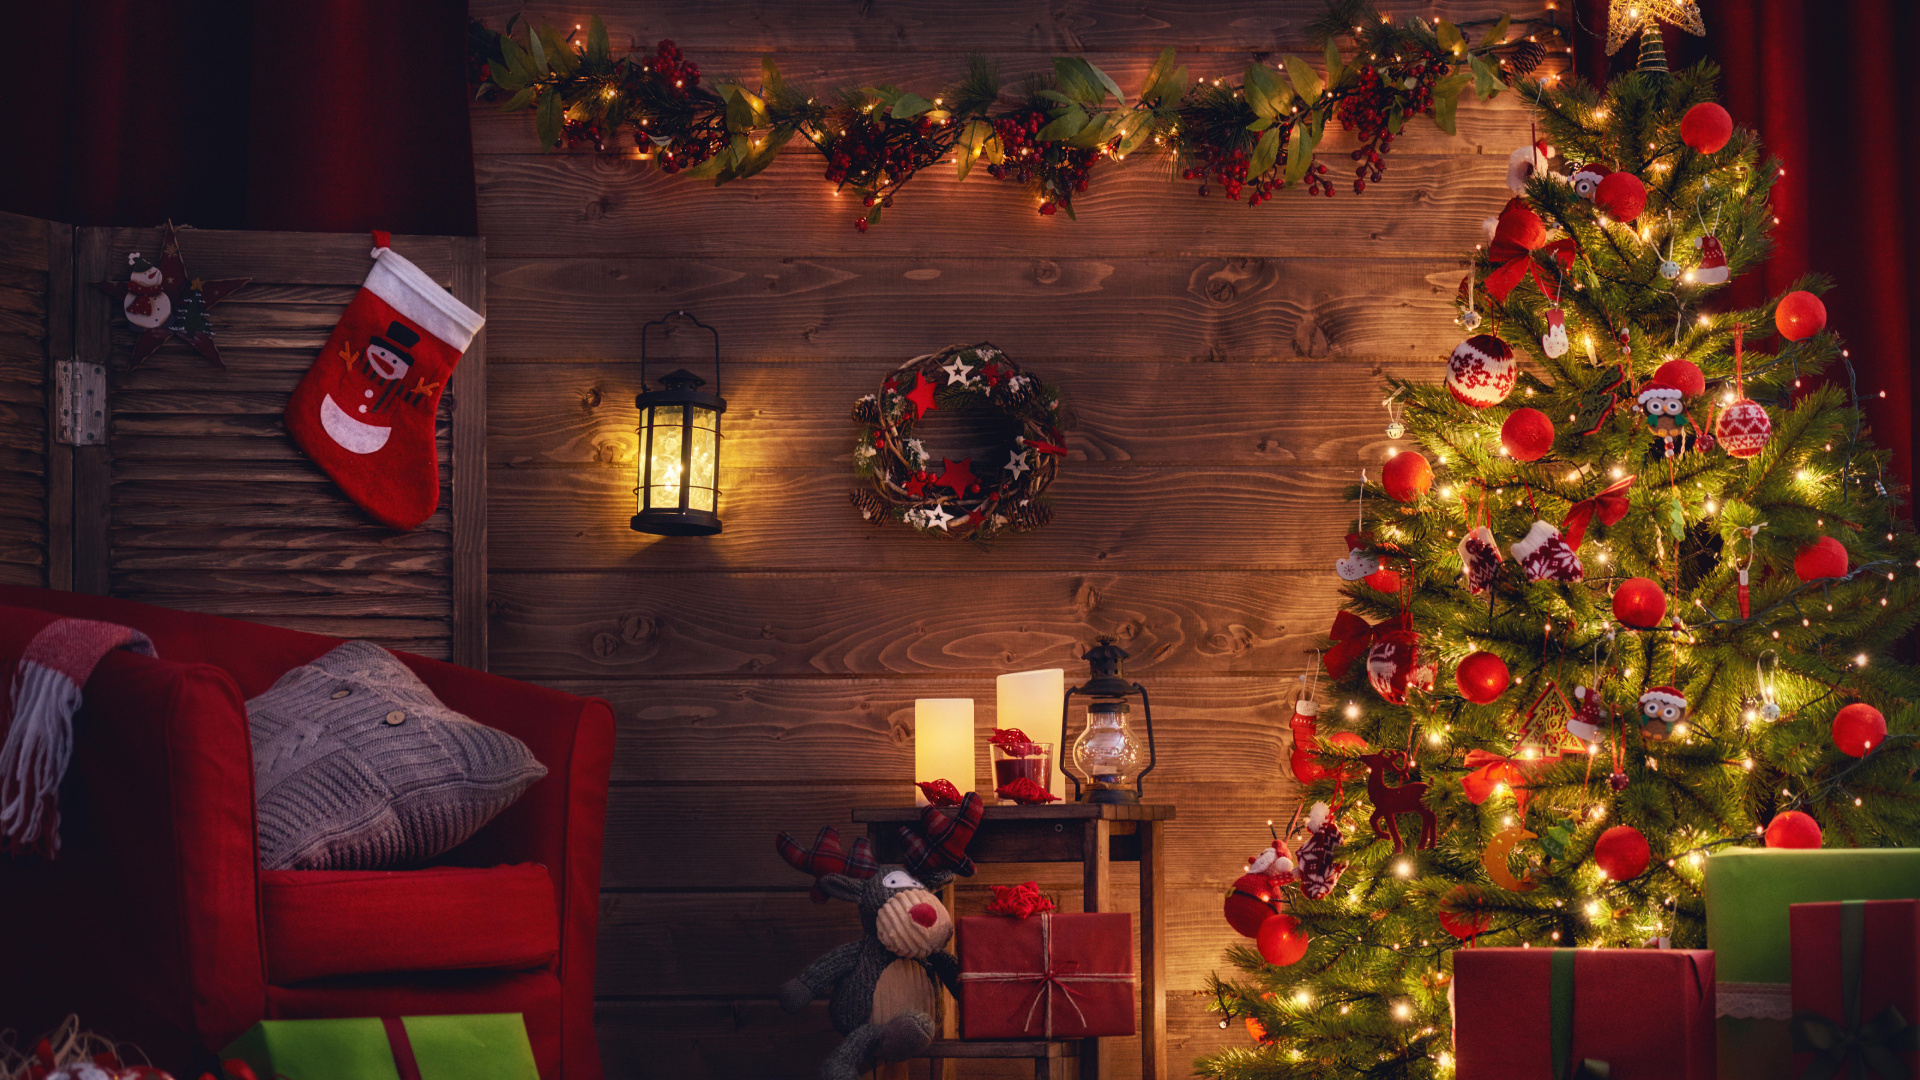 El Día De Navidad, Decoración de la Navidad, Navidad, Luces de Navidad, Calendario de Adviento de Navidad de Madera. Wallpaper in 1920x1080 Resolution